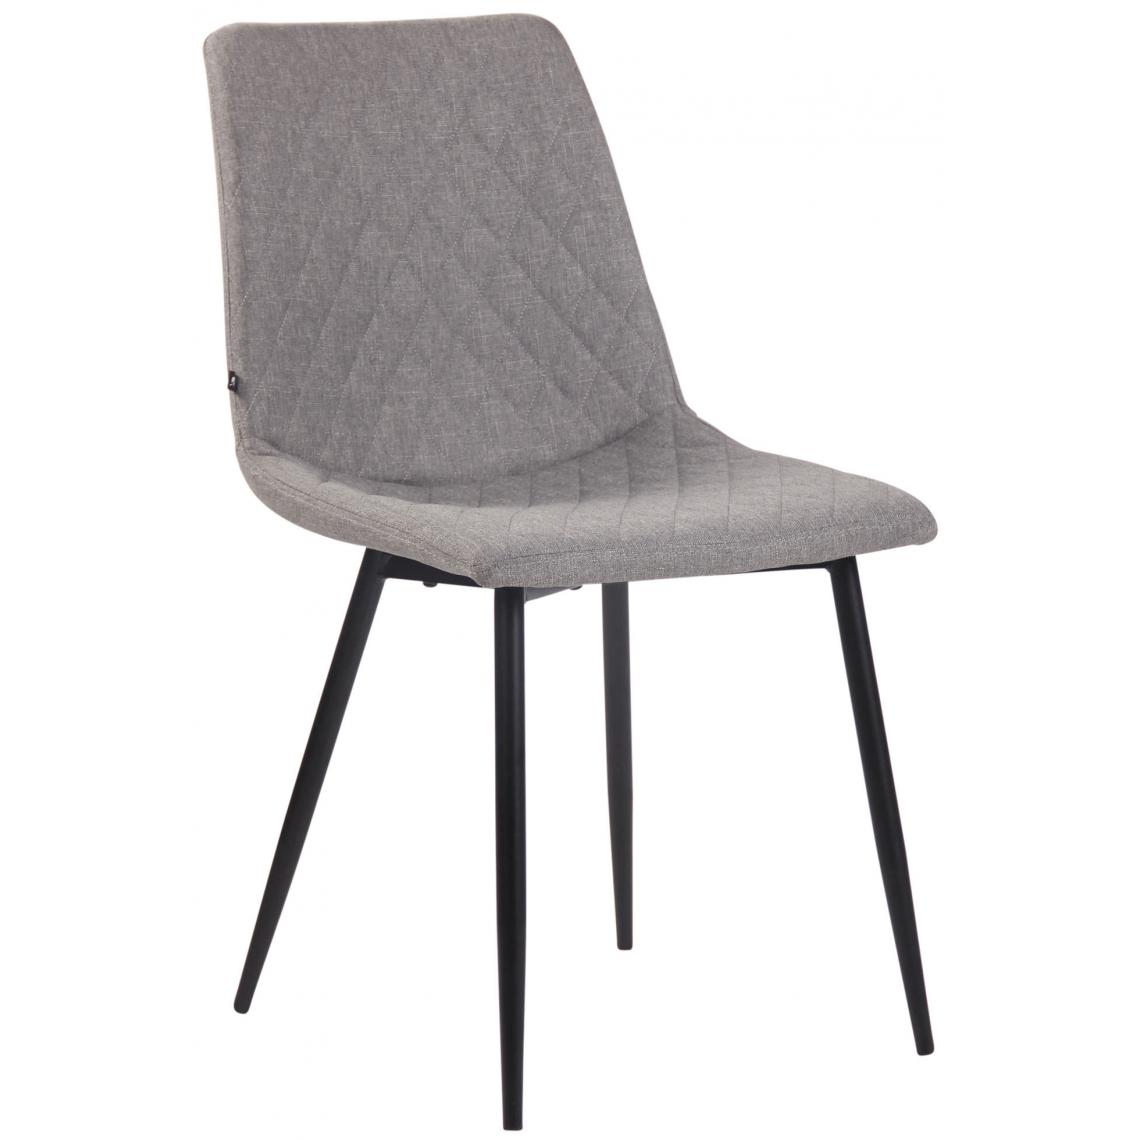 Icaverne - Superbe Chaise en tissu serie Port-d’Espagne couleur gris - Chaises